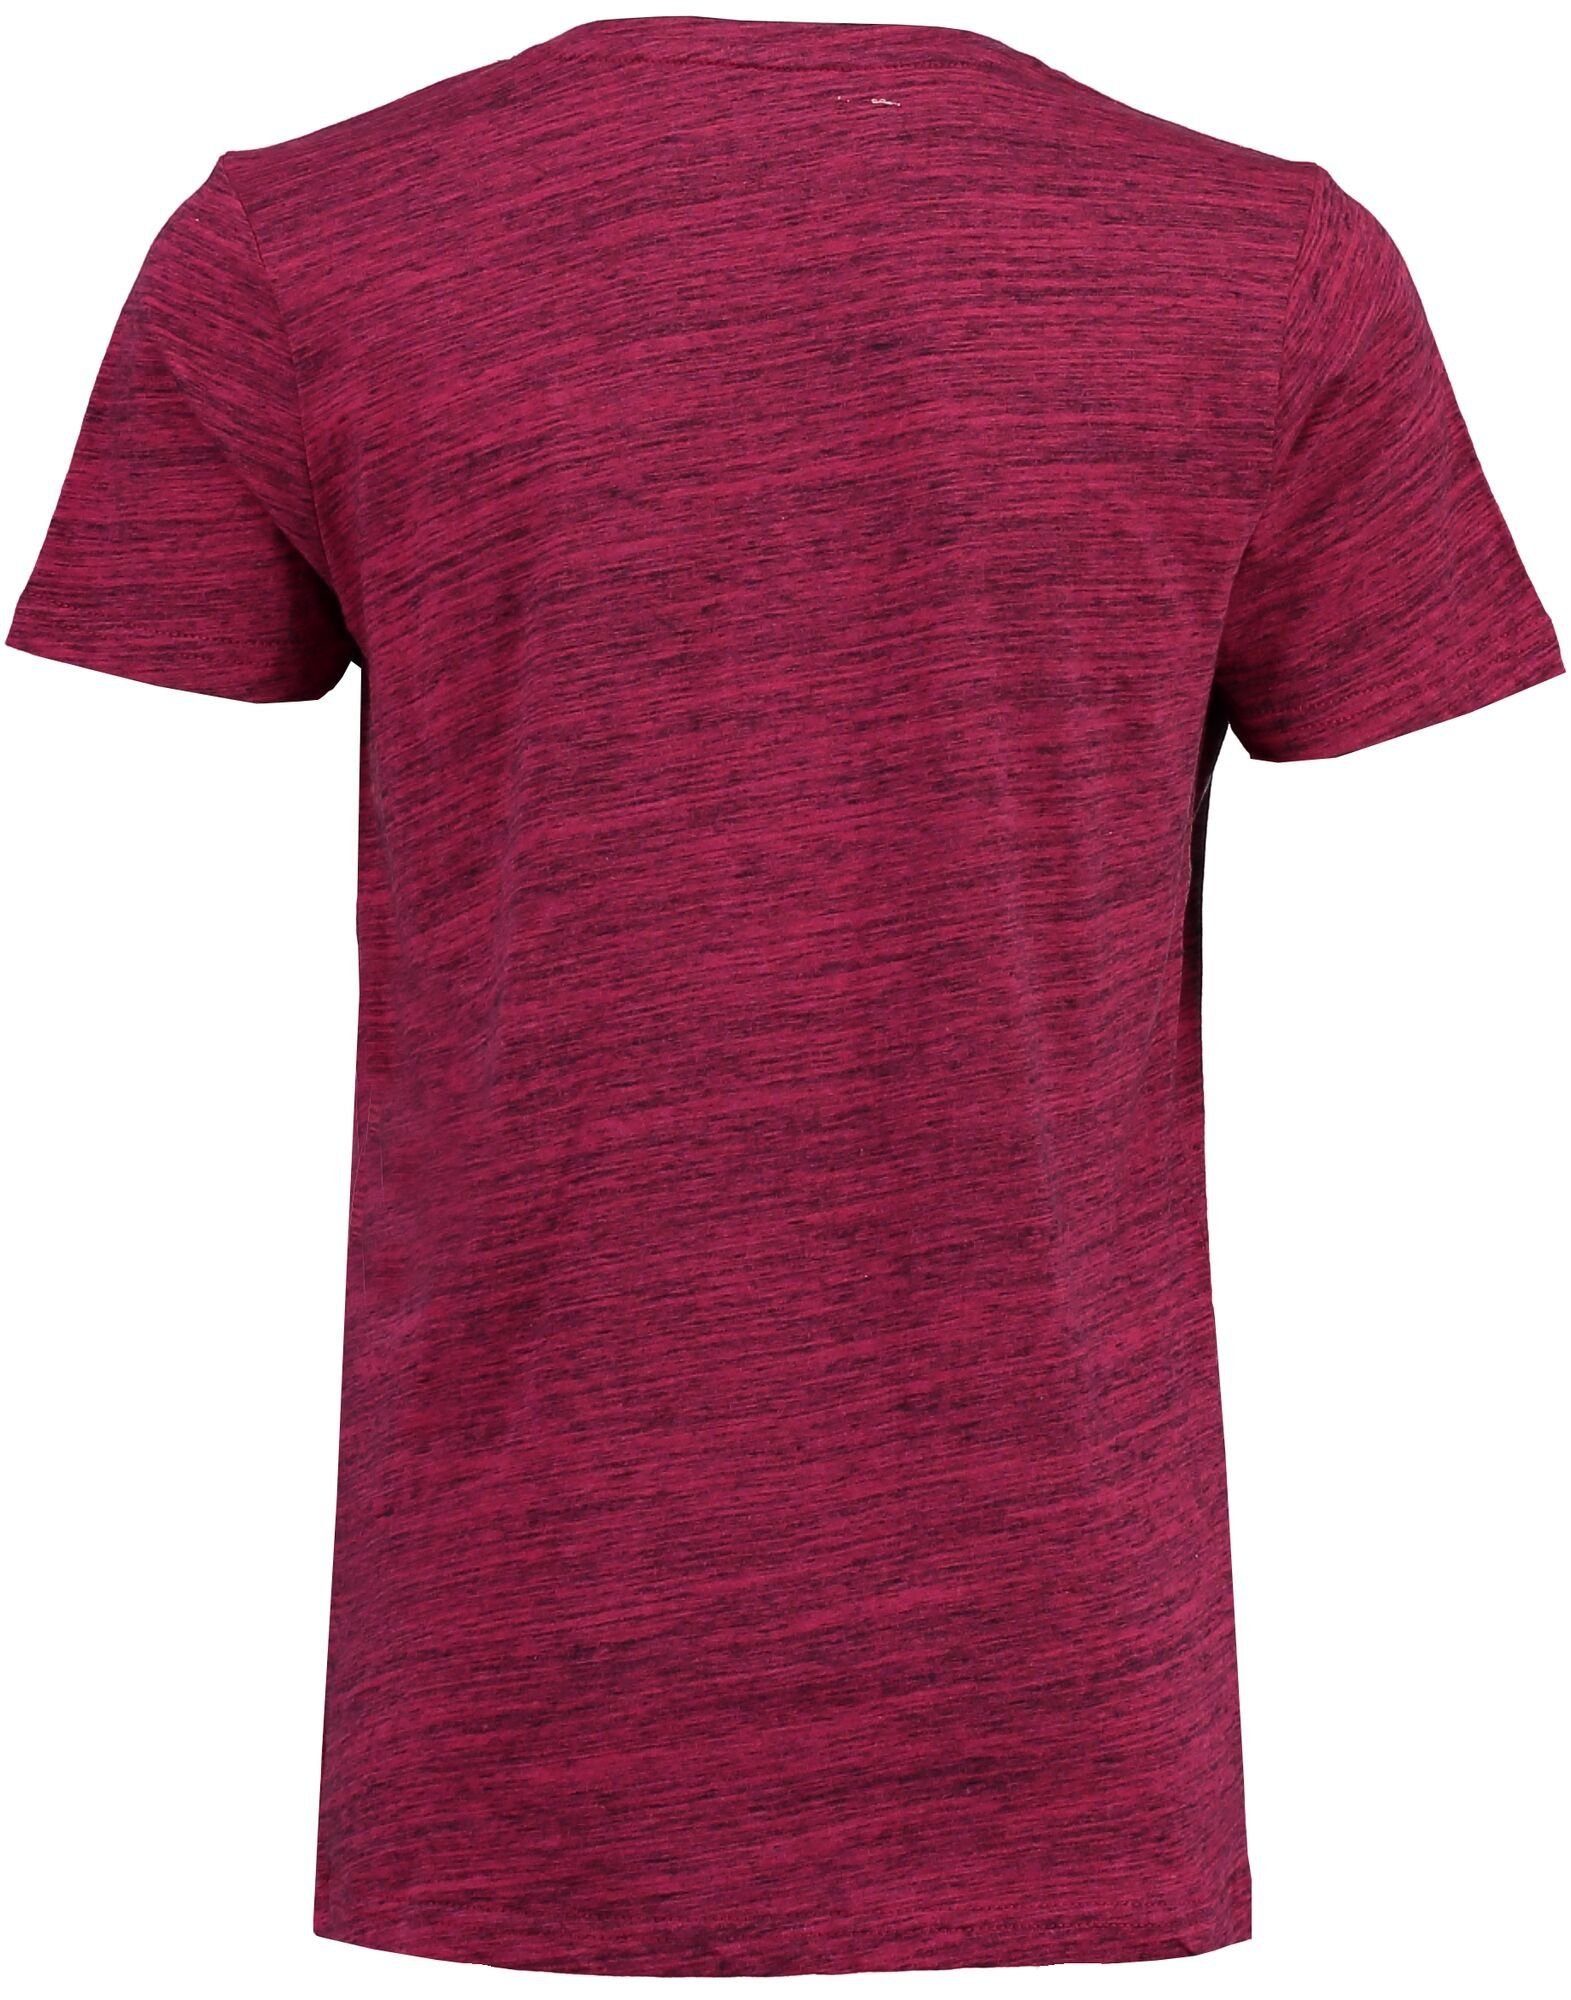 Garcia T-Shirt Herren online kaufen | OTTO